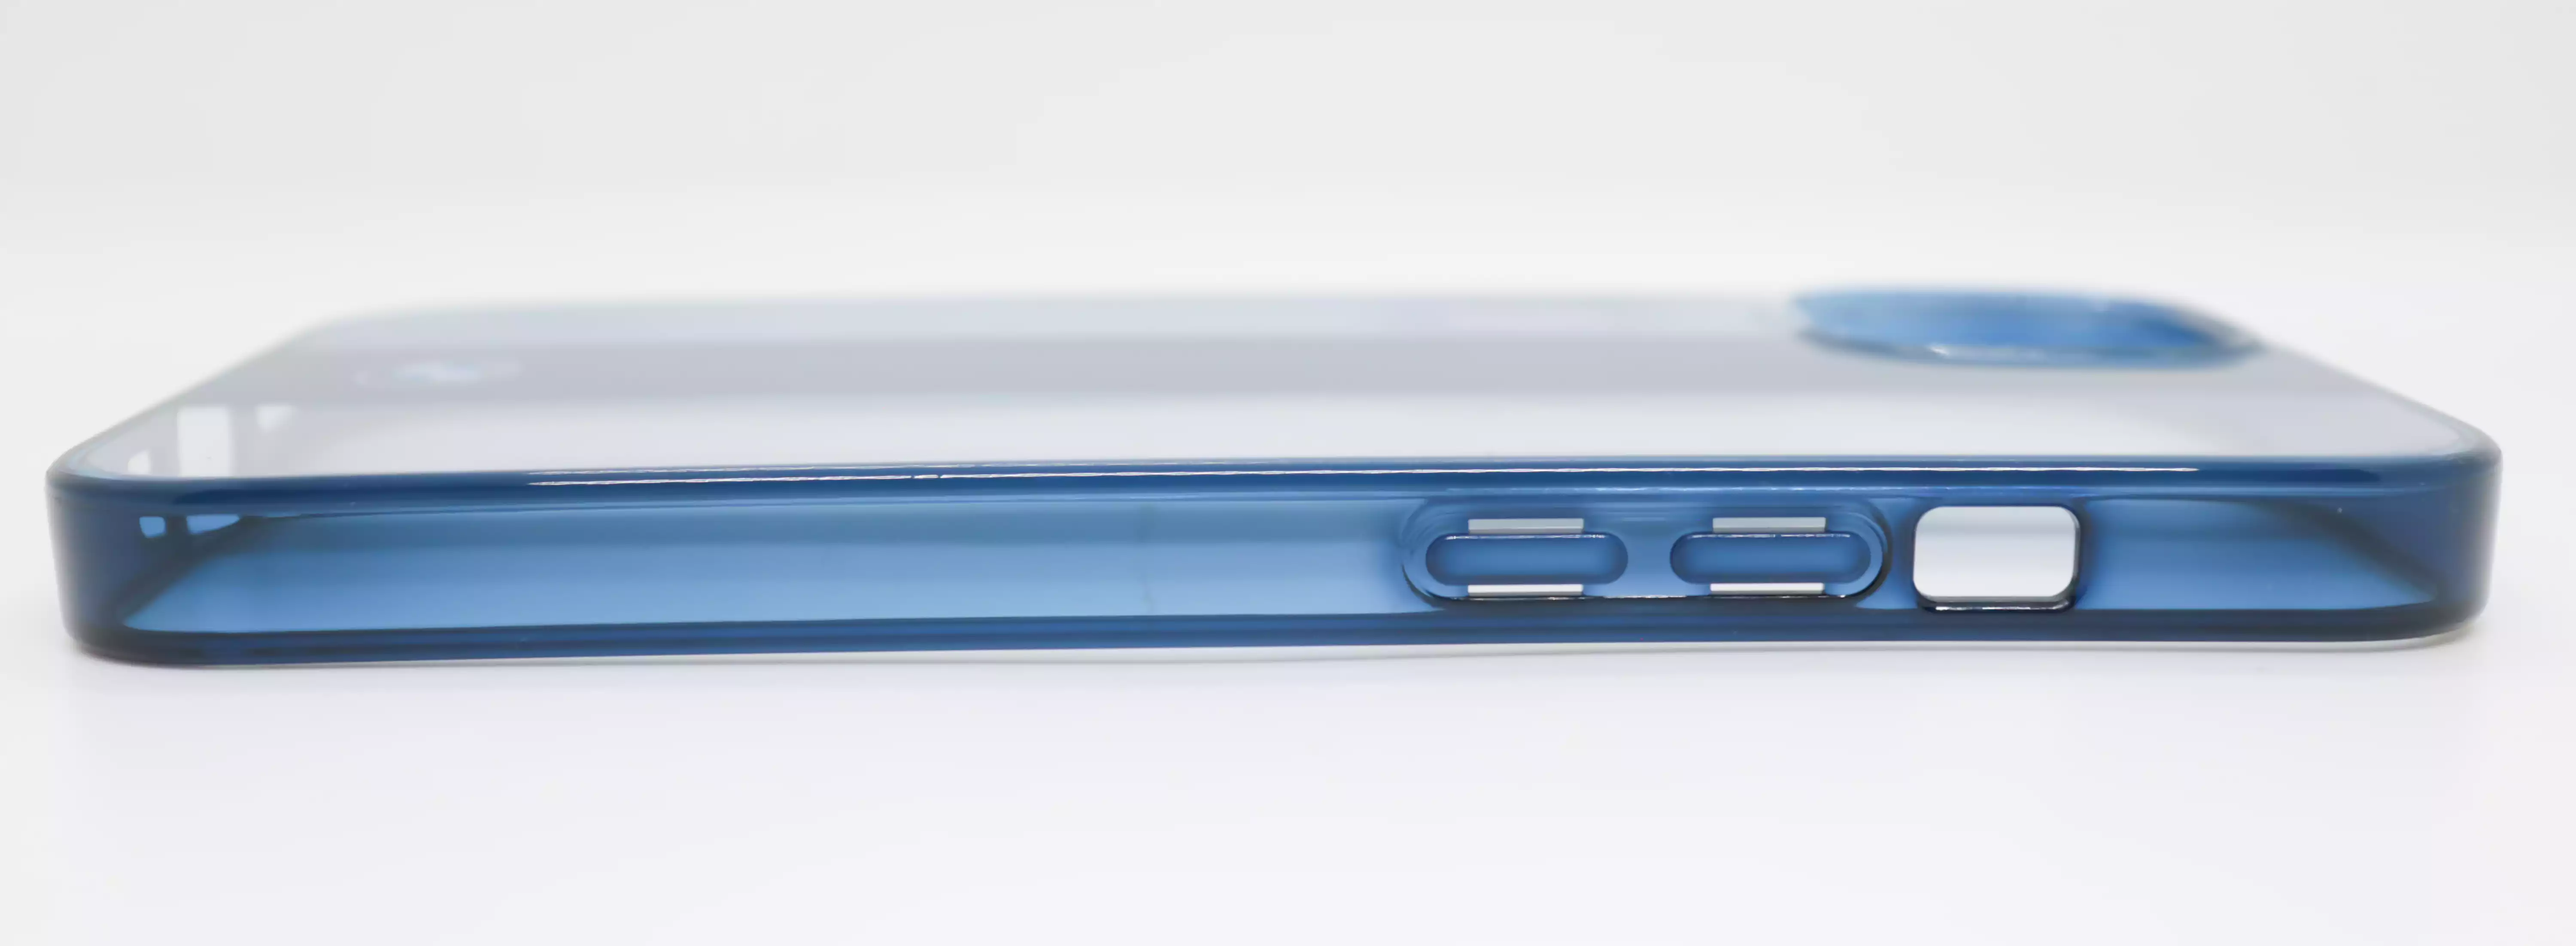 جراب موبايل أيفون 6.1 بوصة، تصميم  BMW، أبيض بفريم ازرق